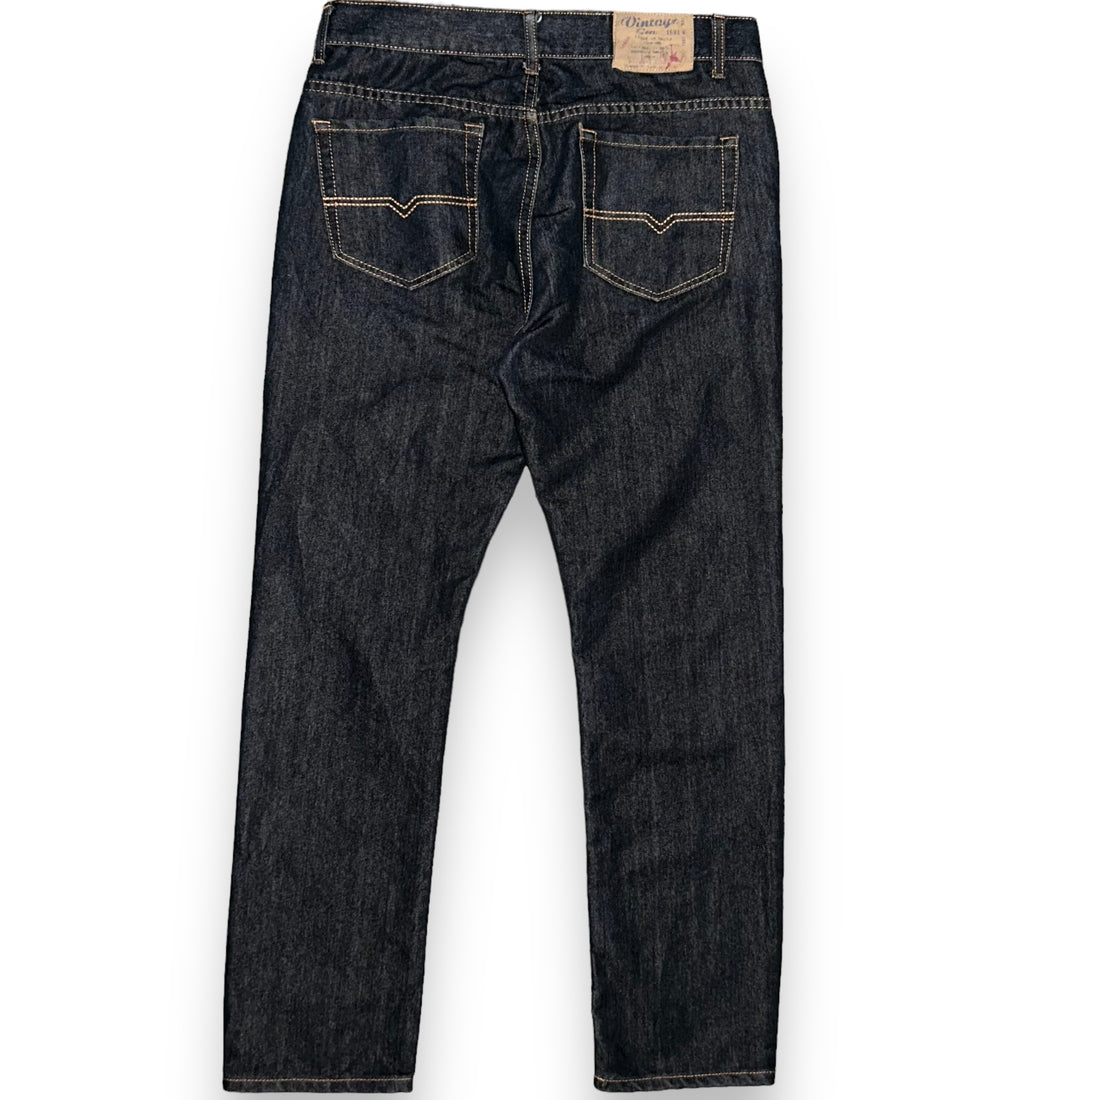 Vintage Genes Jeans (32 US M)